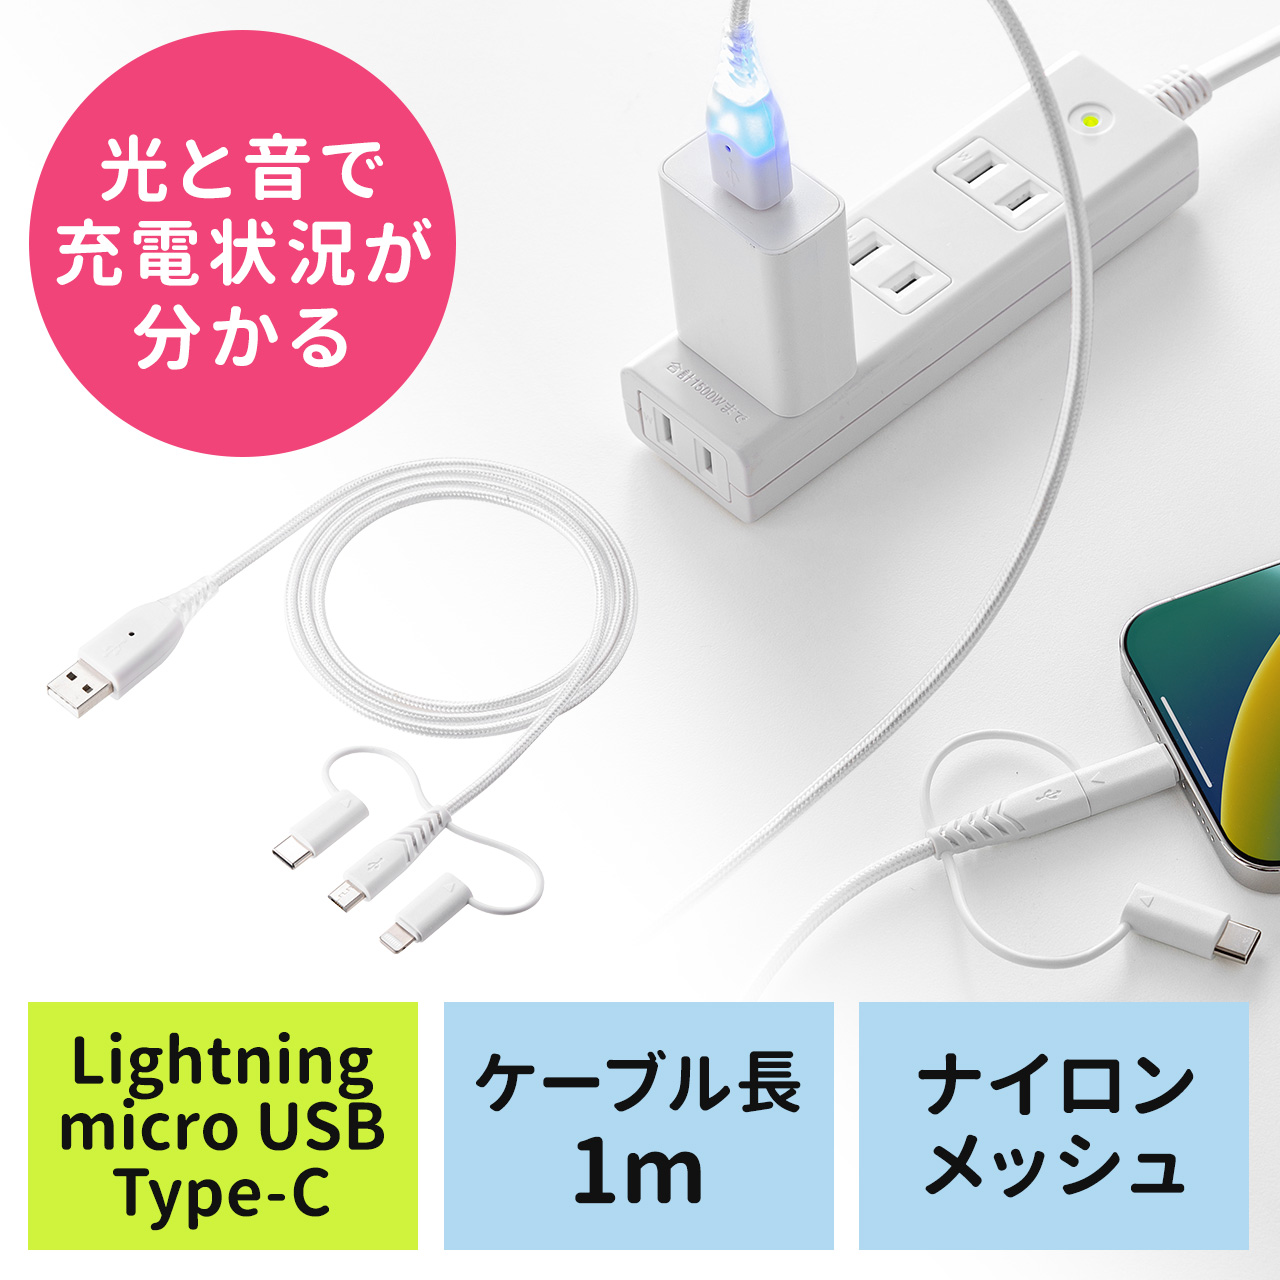 充電お知らせケーブル 3in1 USBケーブル 音 光 USB2.0 1m MFi認証品 充電 データ転送 スマホ タブレット ホワイト  500-IPLM028Wの販売商品 通販ならサンワダイレクト